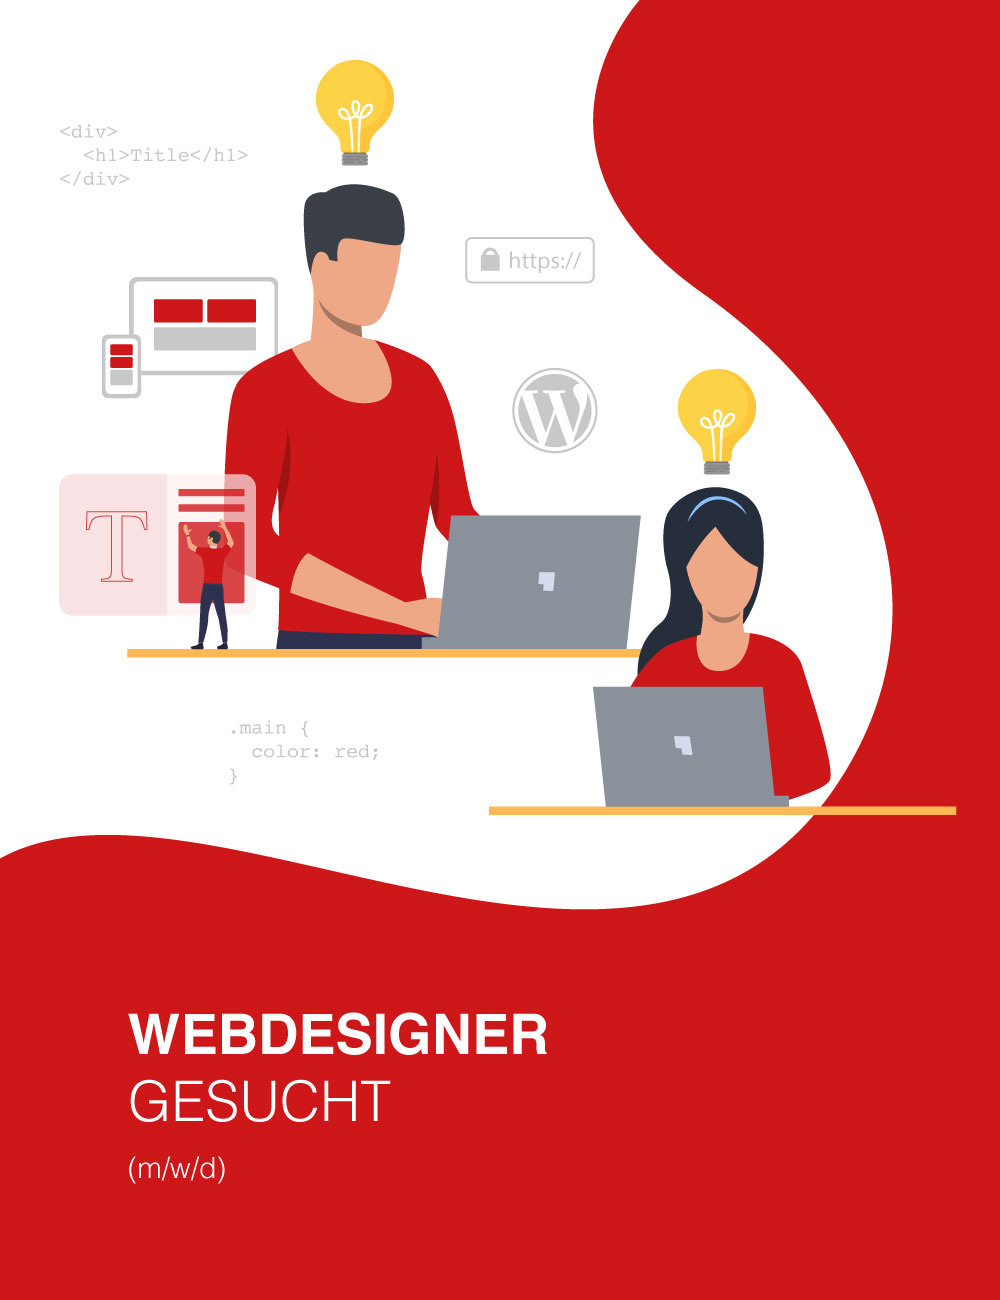 Webdesigner gesucht (m/w/d)